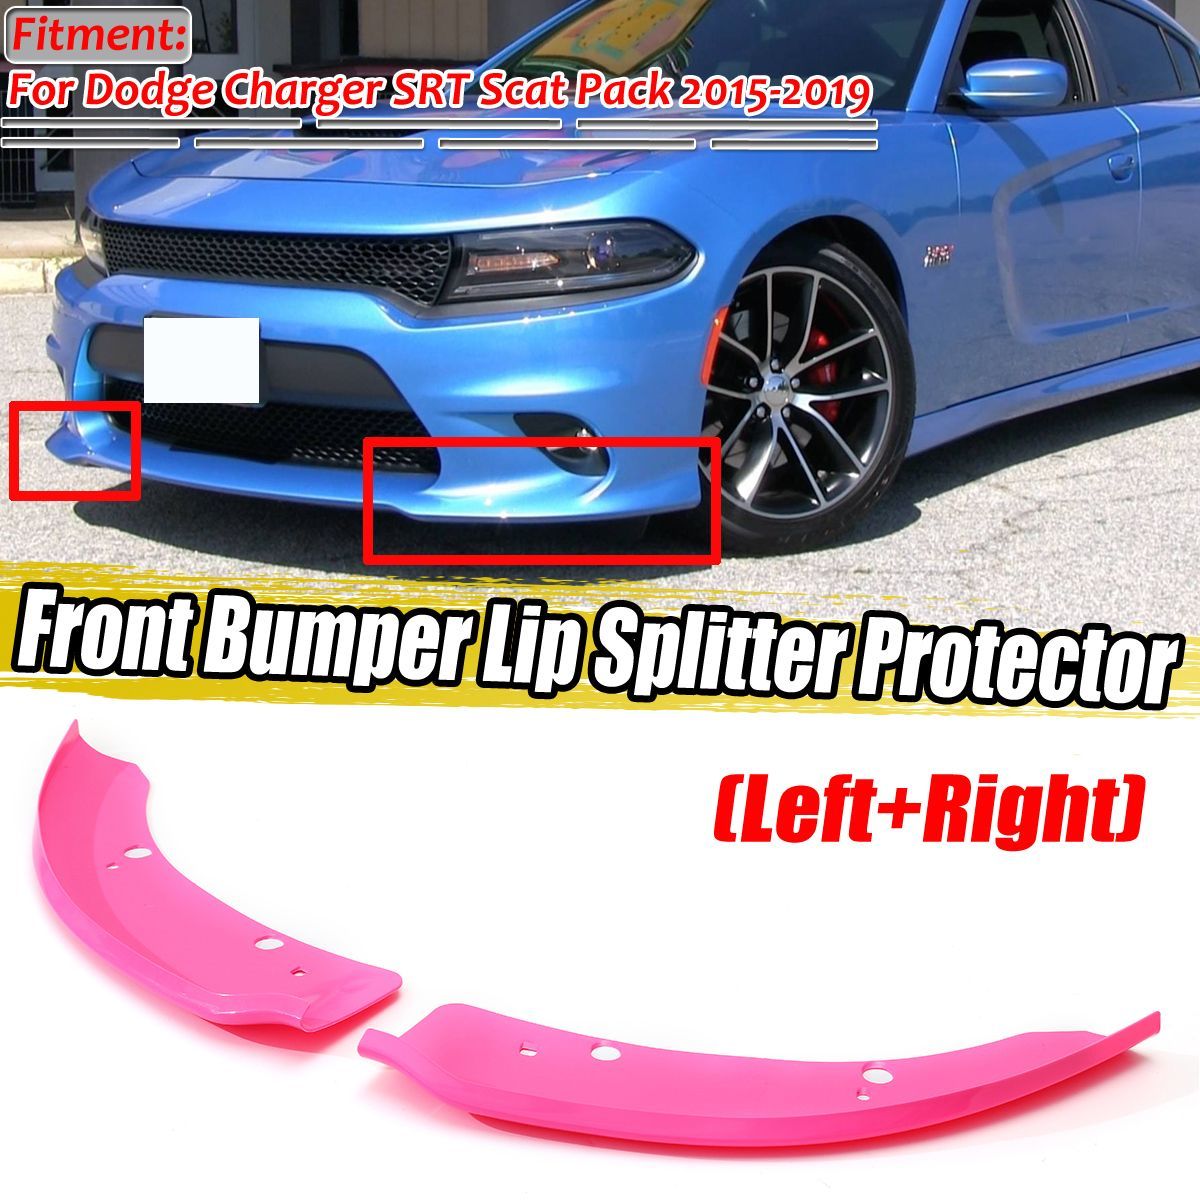 Front-Bumper-Lip-Splitter-Protector-Pink-For-Dodge-Charger-SRT-Scat-Pack-2015-2019-1684872